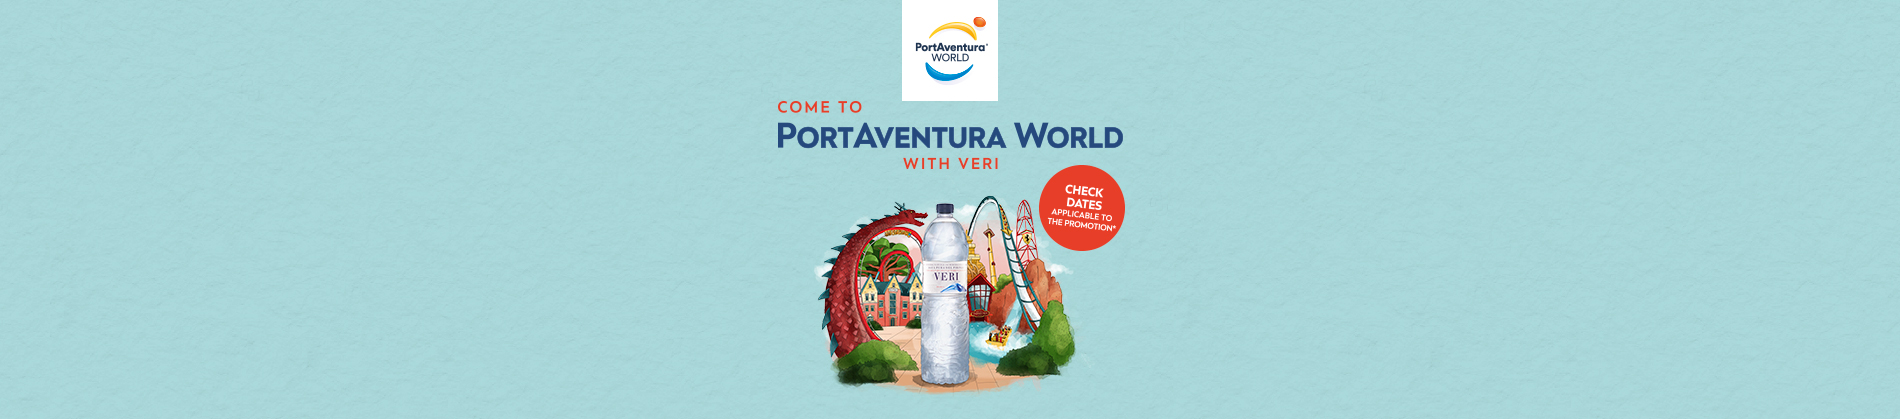 Come to PortAventura World with Veri